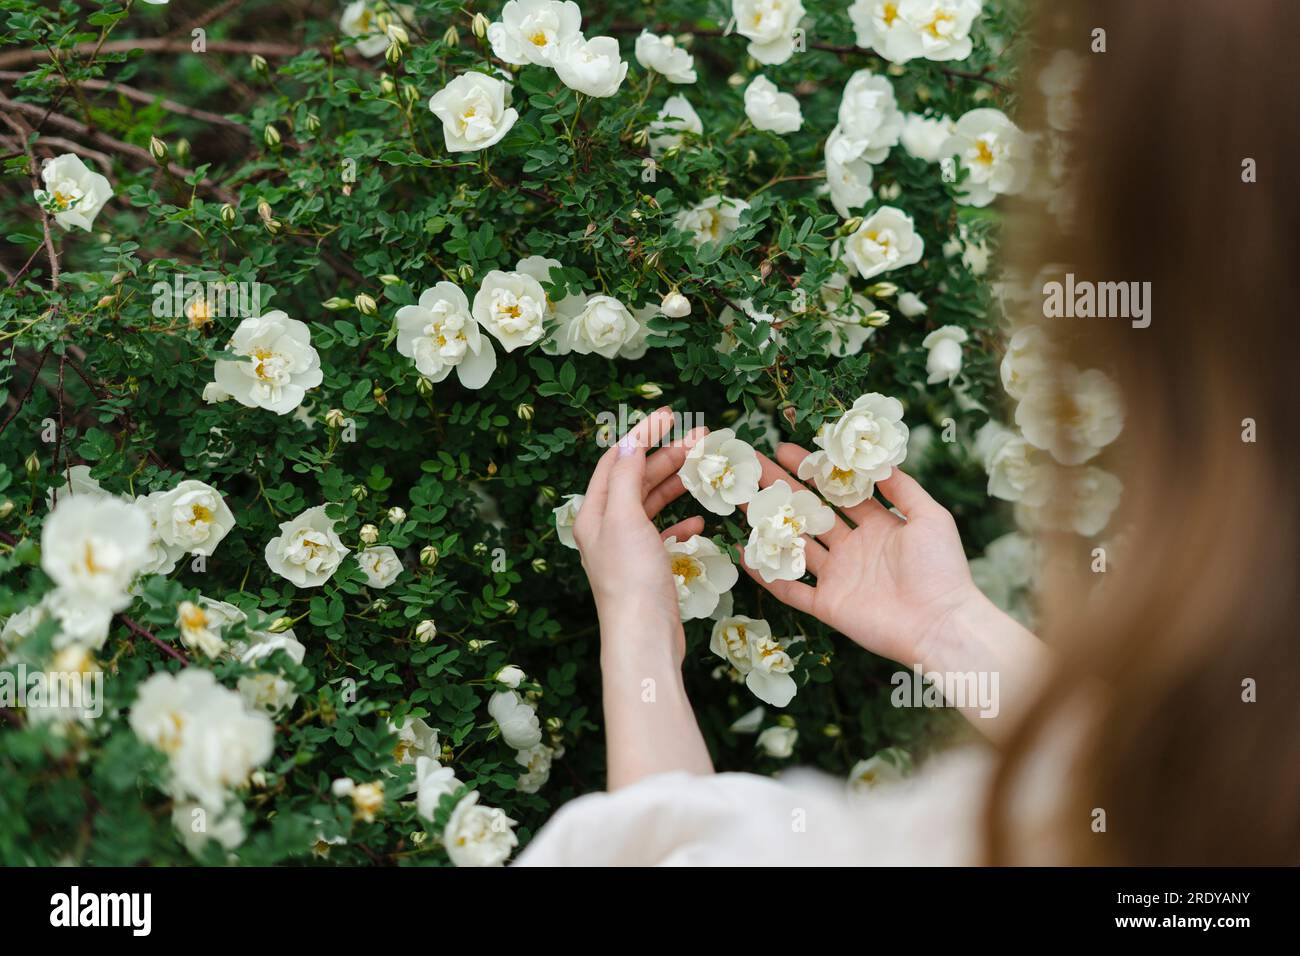 Abgeschnittenes Bild einer Frau, die weiße Blumen berührt, die im Busch blühen Stockfoto